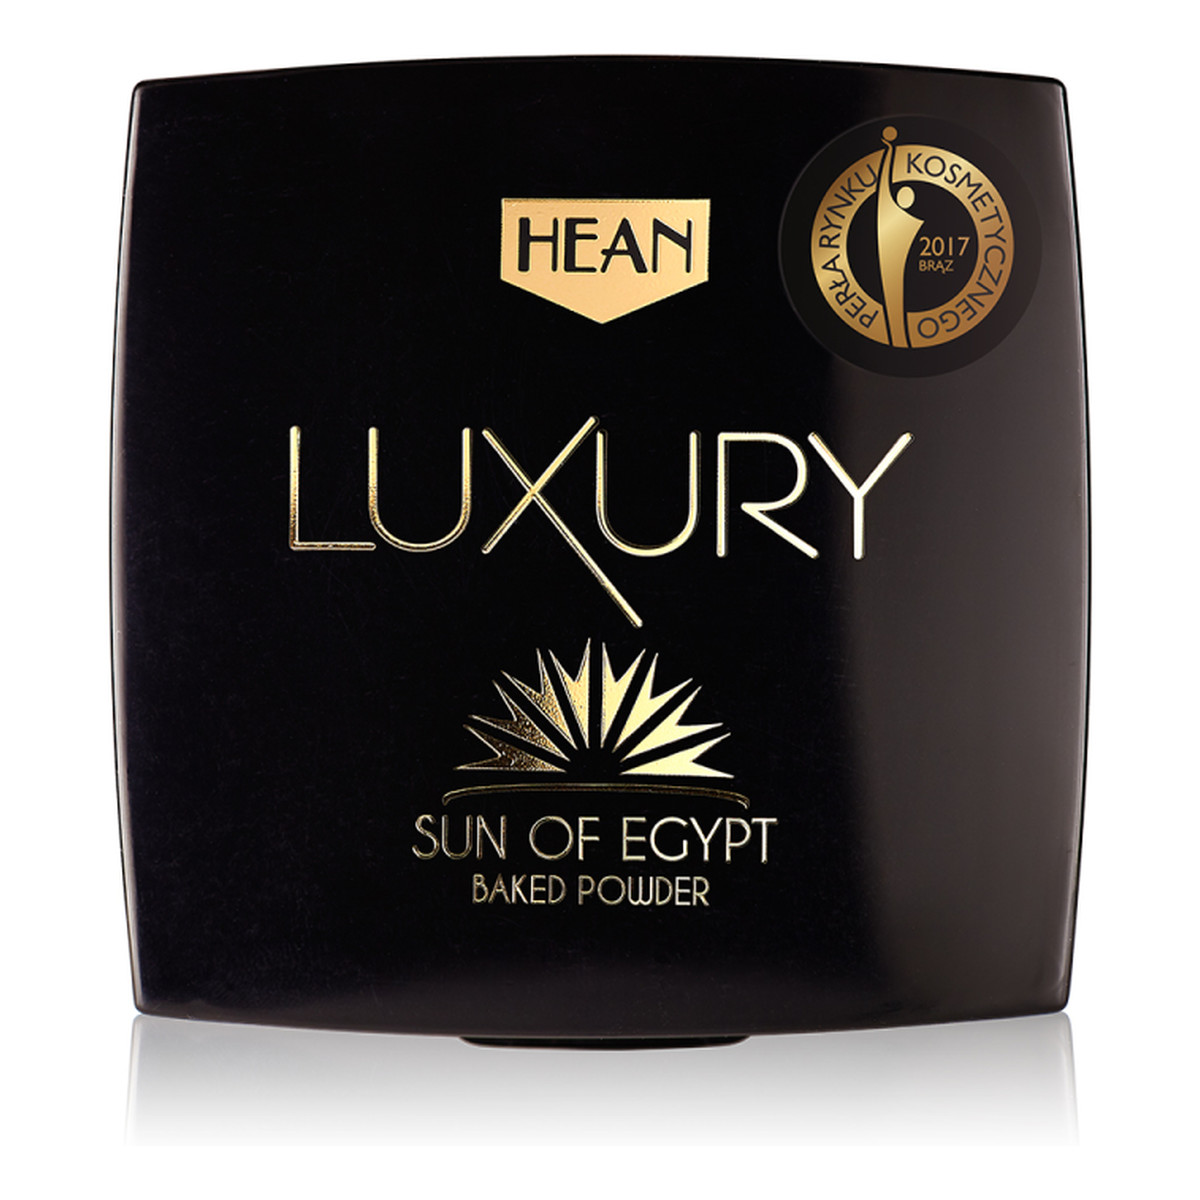 Hean Luxury Sun of Egypt Baked Powder Wypiekany bronzer Cocoa 8.5g